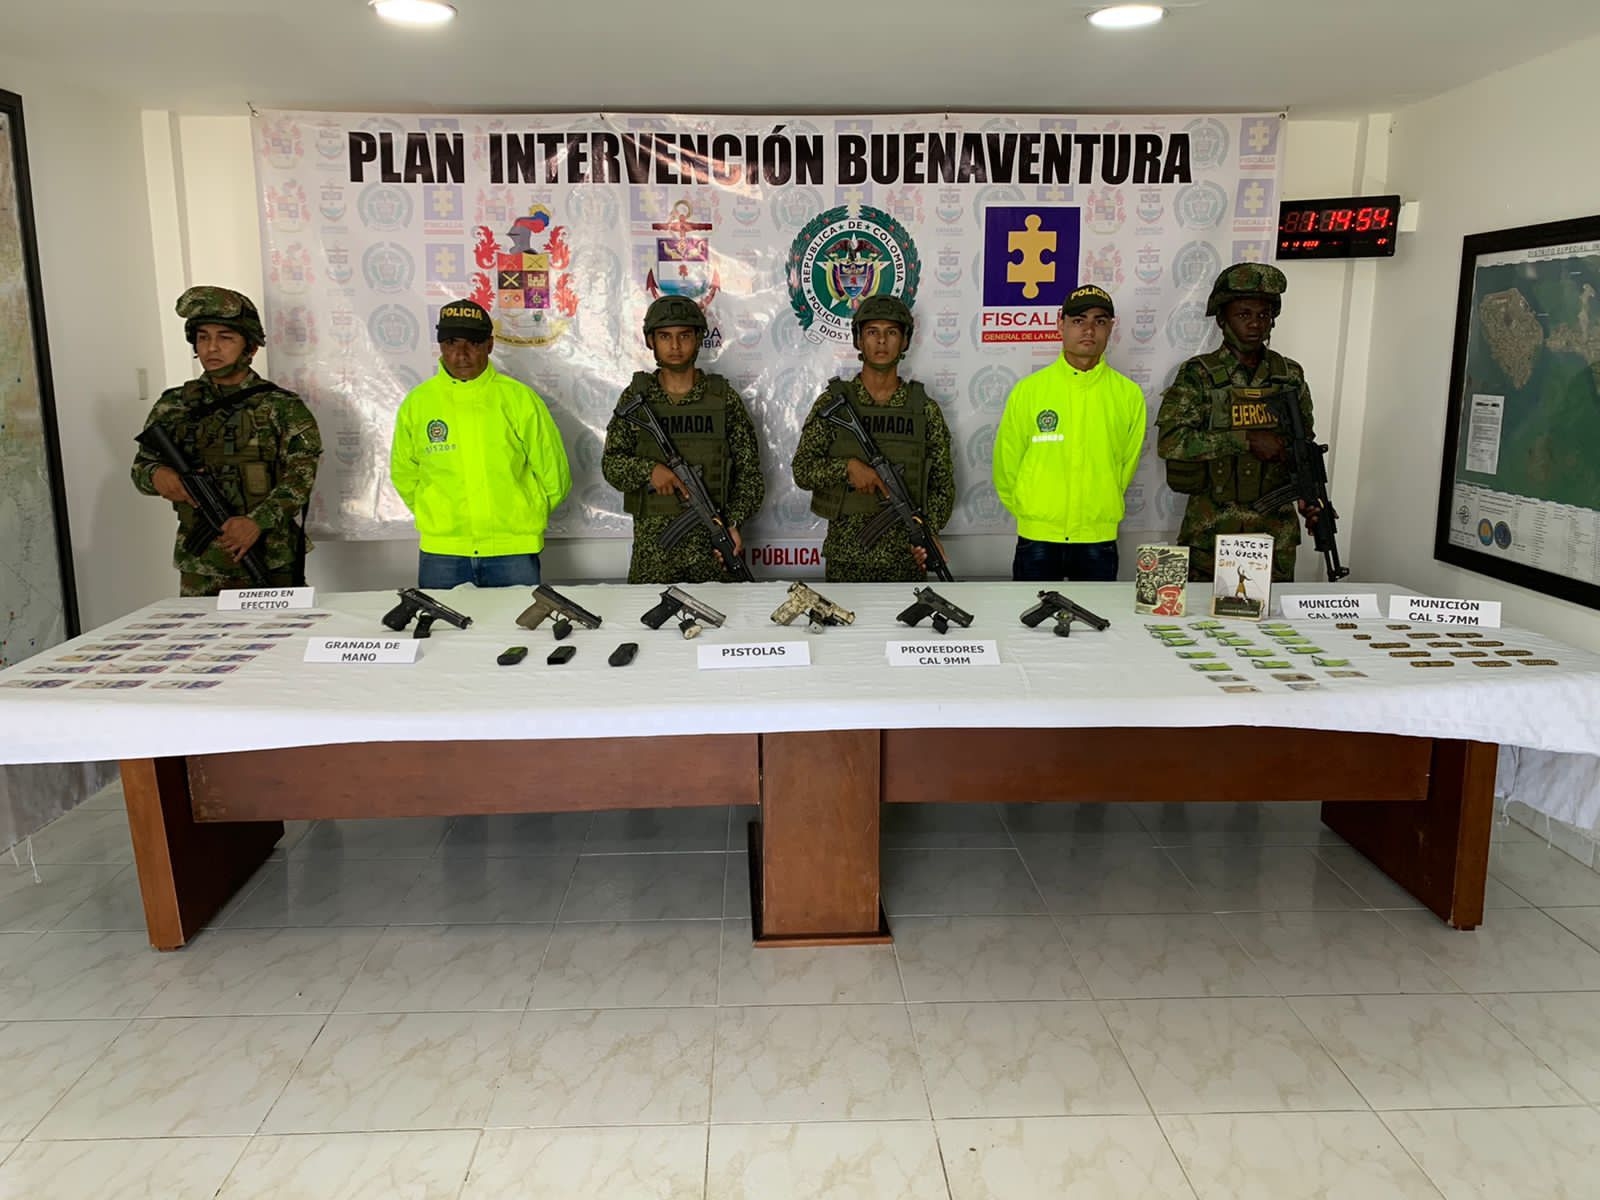 La Fuerza Pública capturó a 8 presuntos integrantes de las disidencias de las Farc en zona rural de Buenaventura